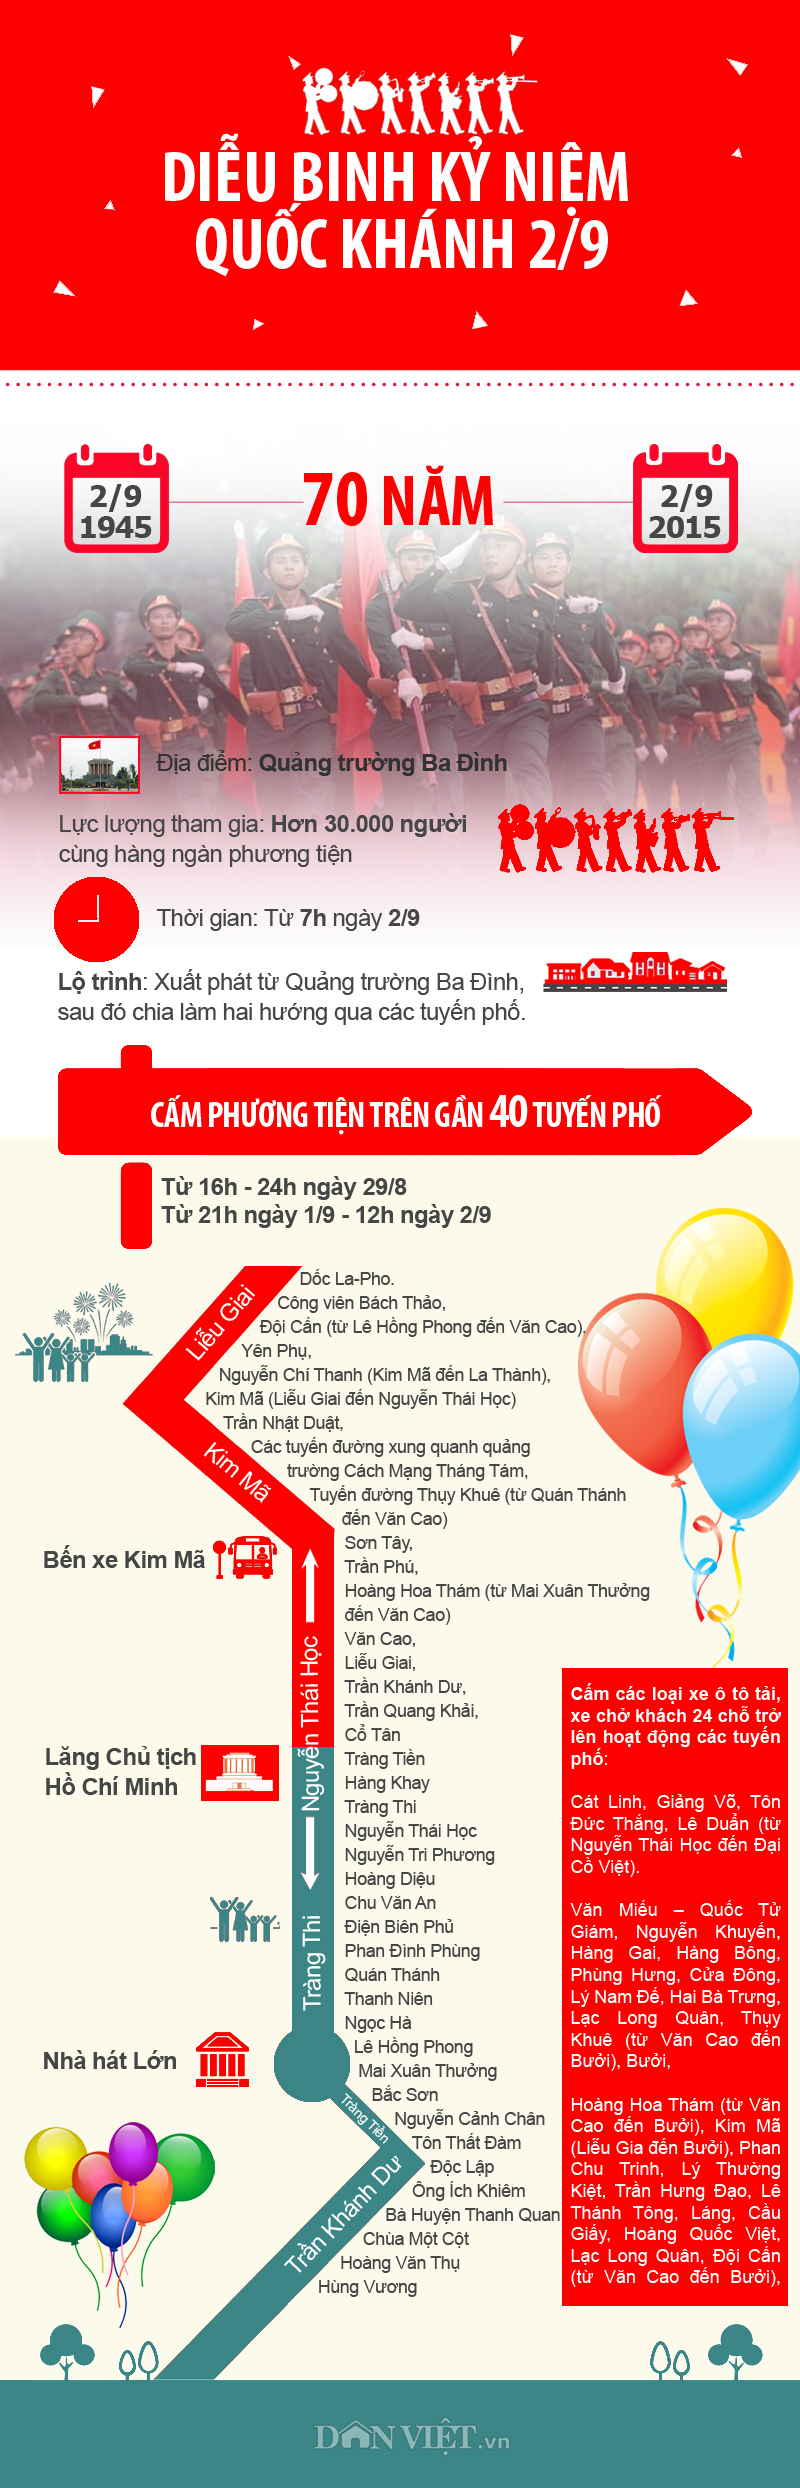 Infographic: Lộ trình diễu binh kỷ niệm Quốc khánh 2/9 - 1